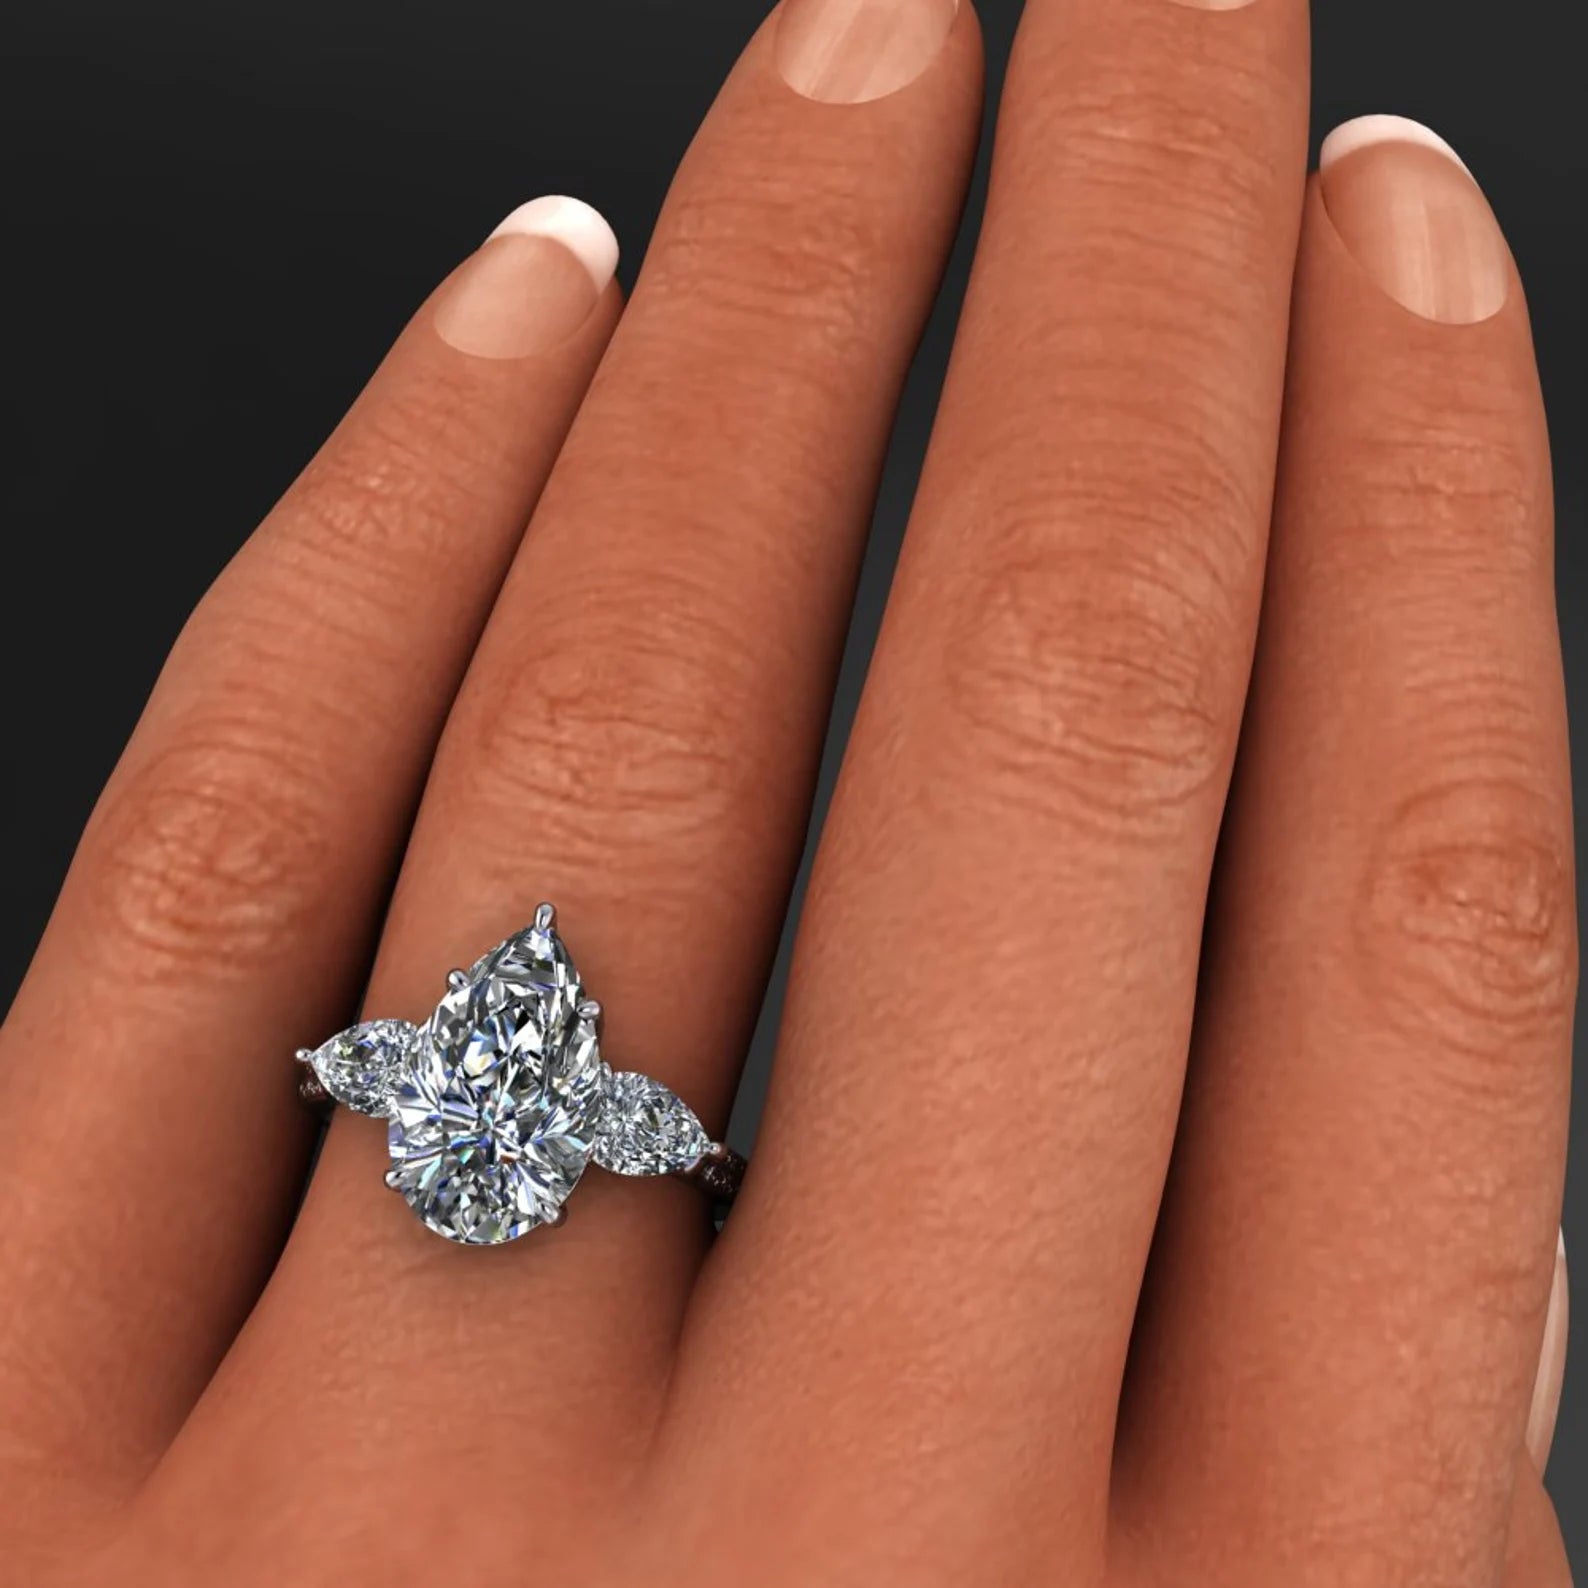 erica ring - 4 carat pear cut ZAYA moissanite engagement ring, 3 stone ring - J Hollywood Designs